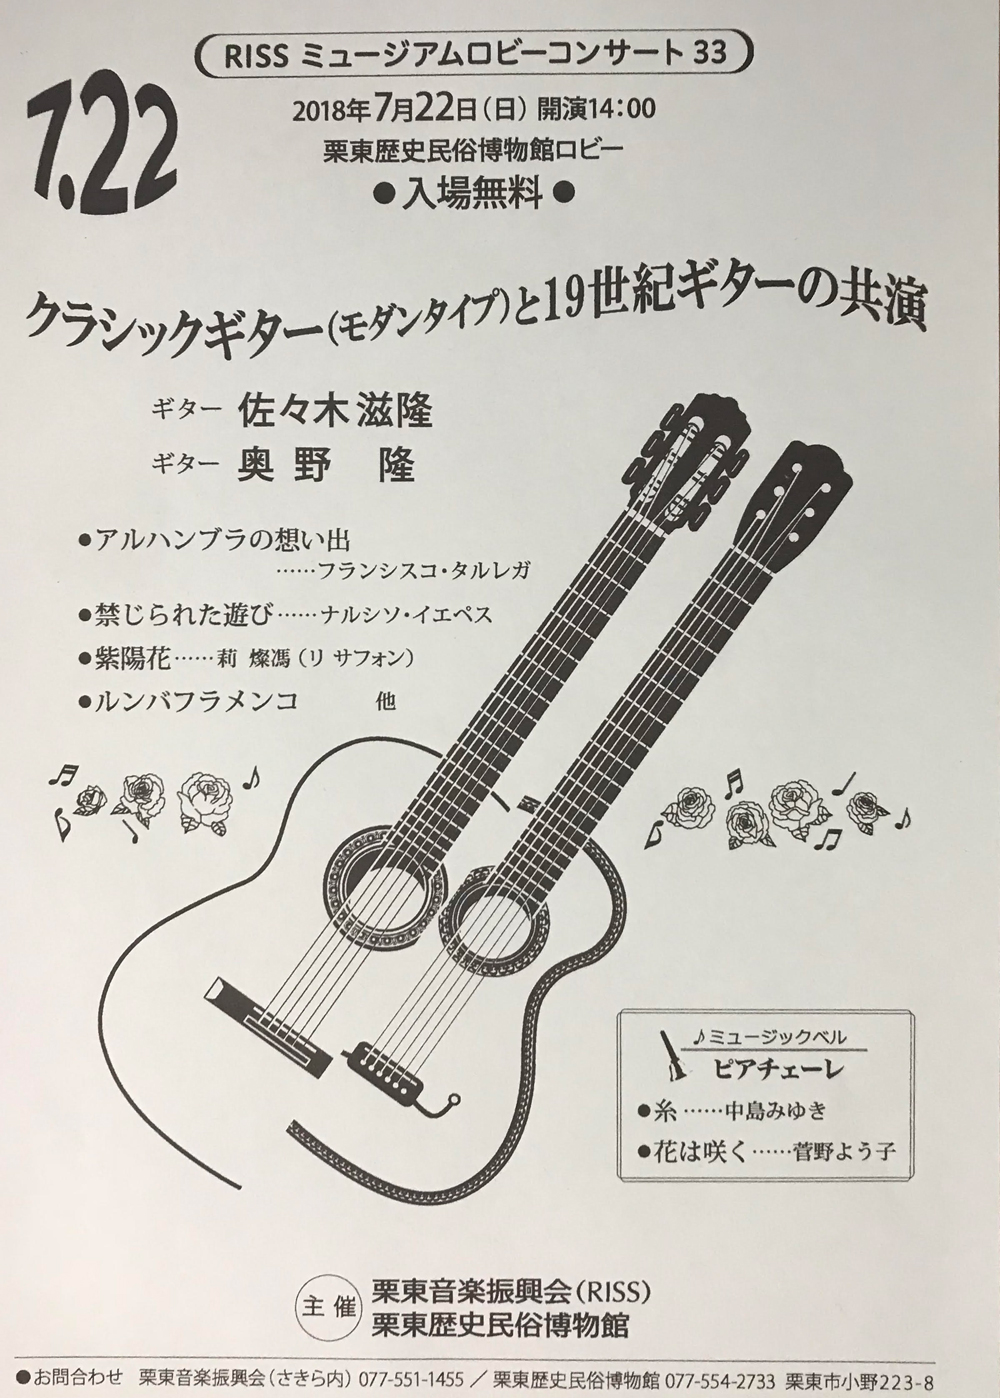 奥野隆コンサート情報 クラシックギター（モダンタイプ）と19世紀ギターの共演